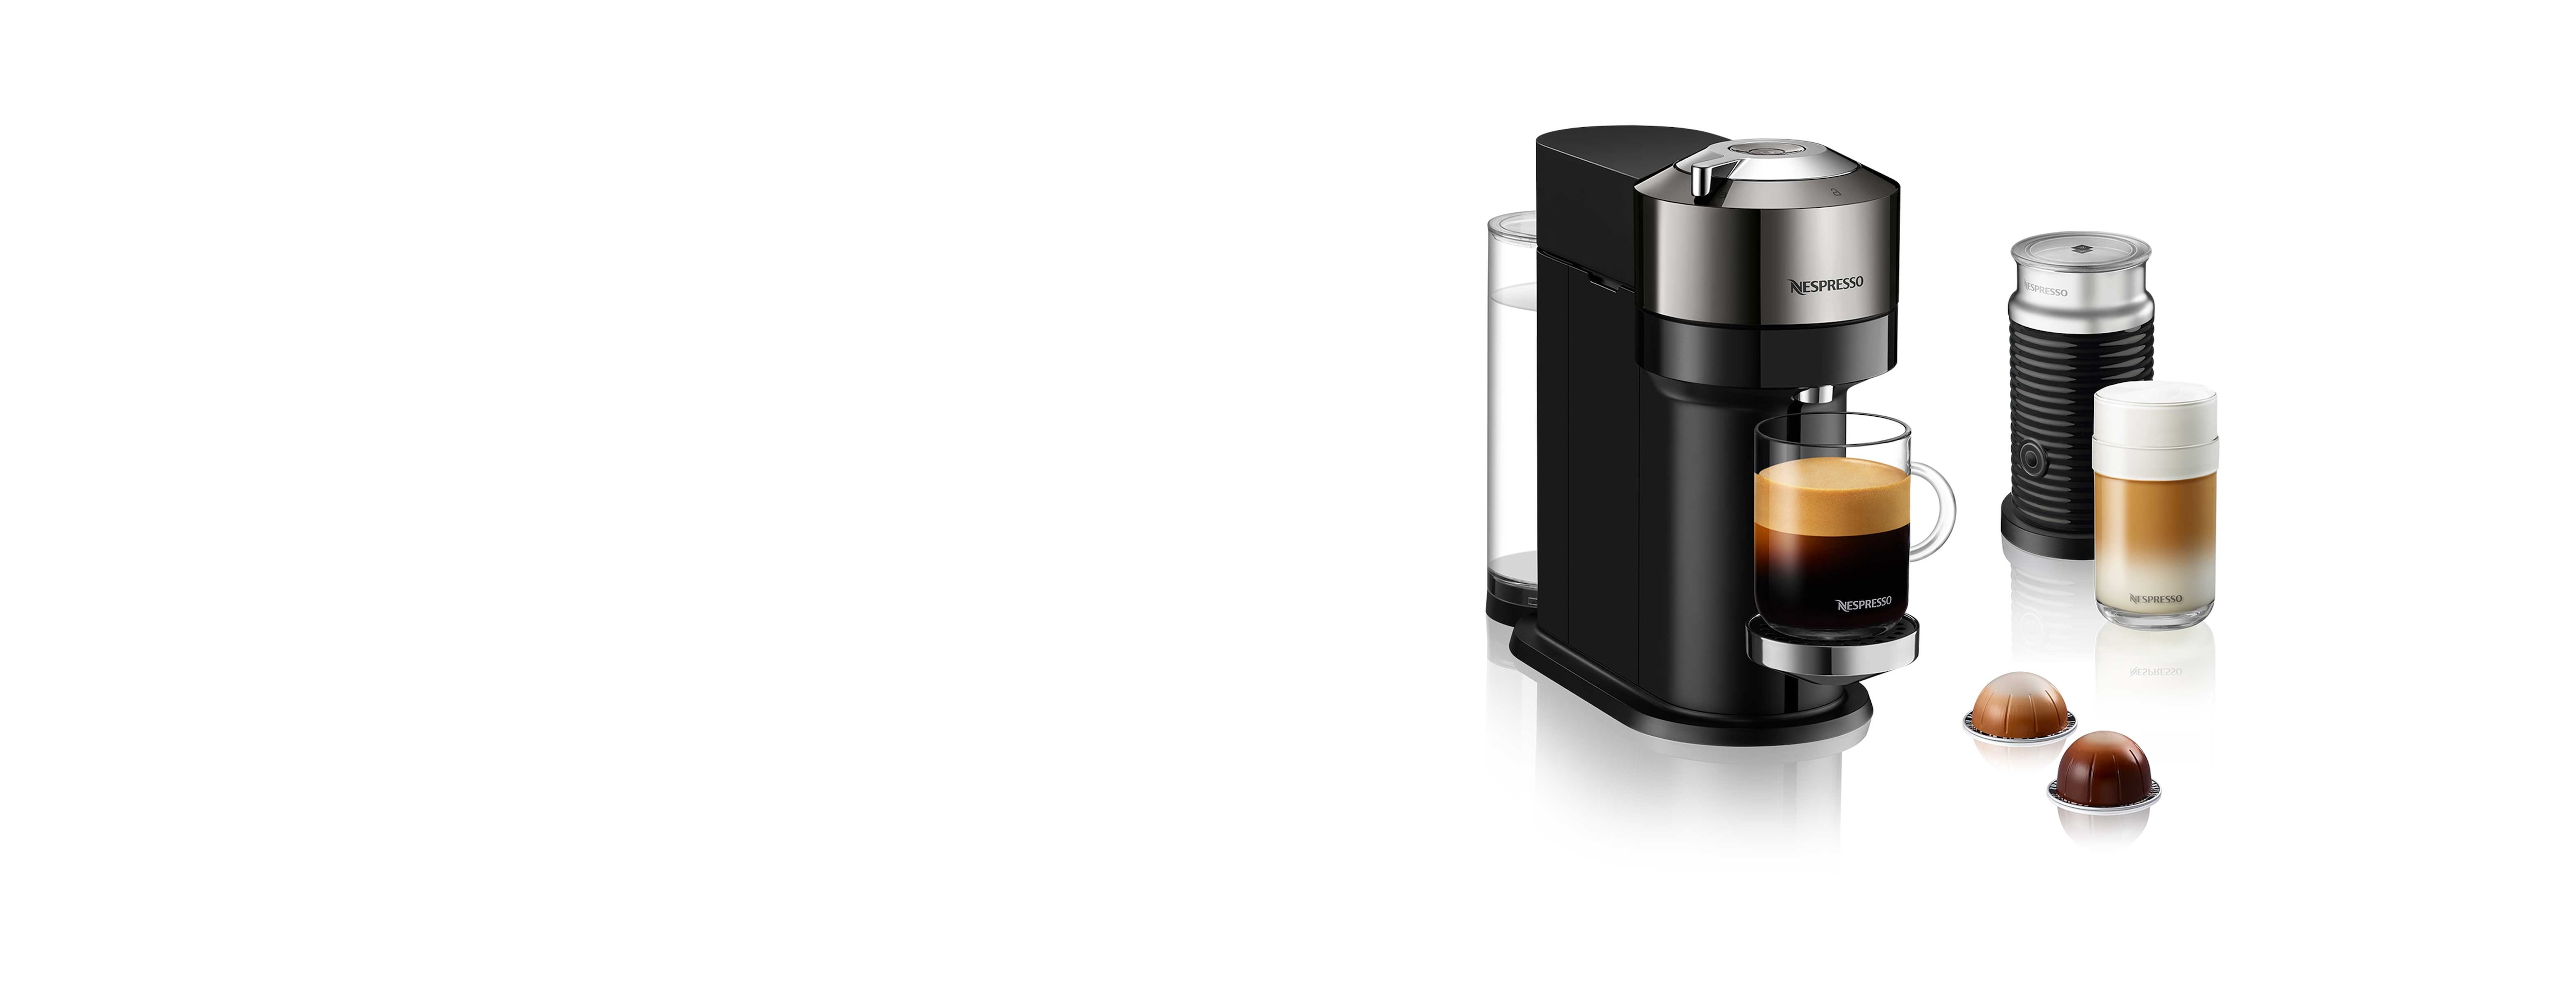 Nespresso Vertuo Vertuo Next Deluxe chrome 11709 